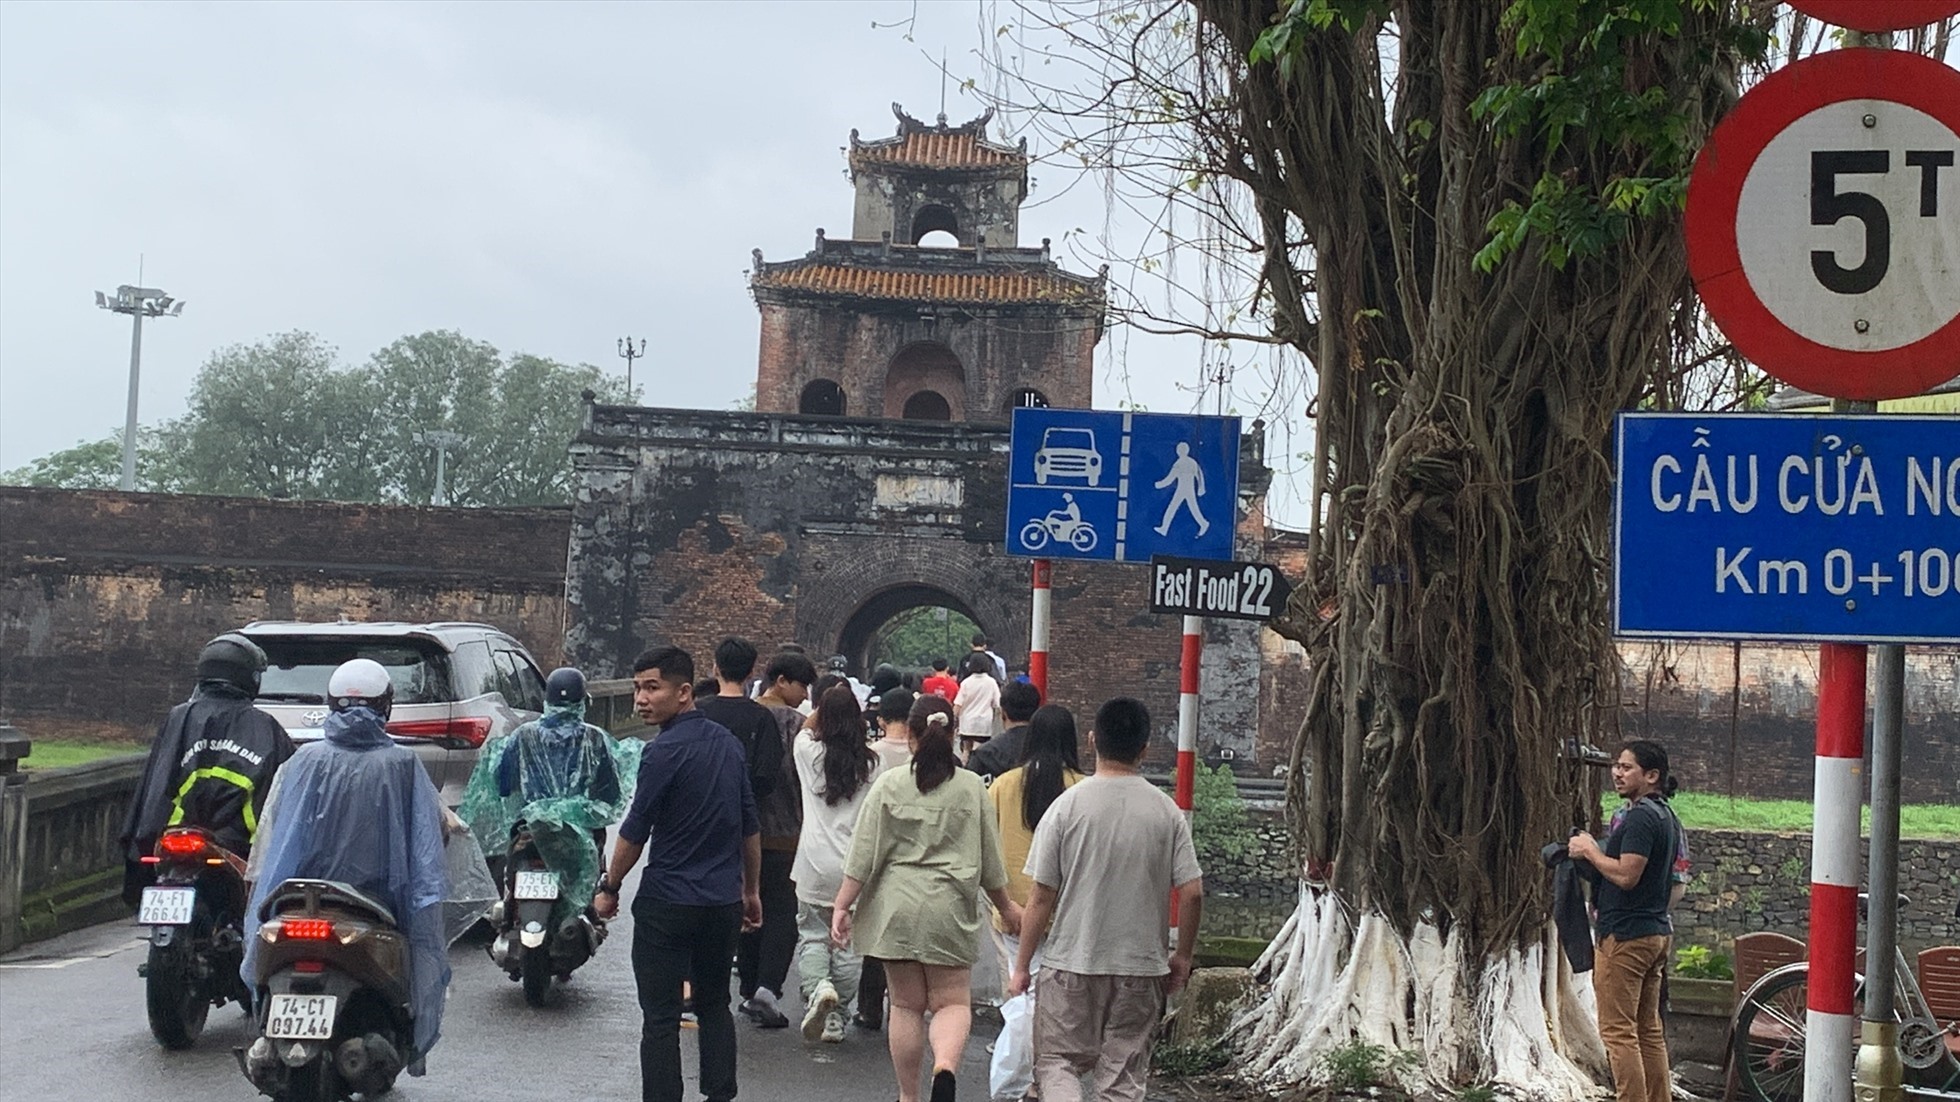 Khách du lịch chen chân với các phương tiện cơ giới tại cầu cửa Ngăn của Kinh thành Huế. Ảnh: Tường Minh